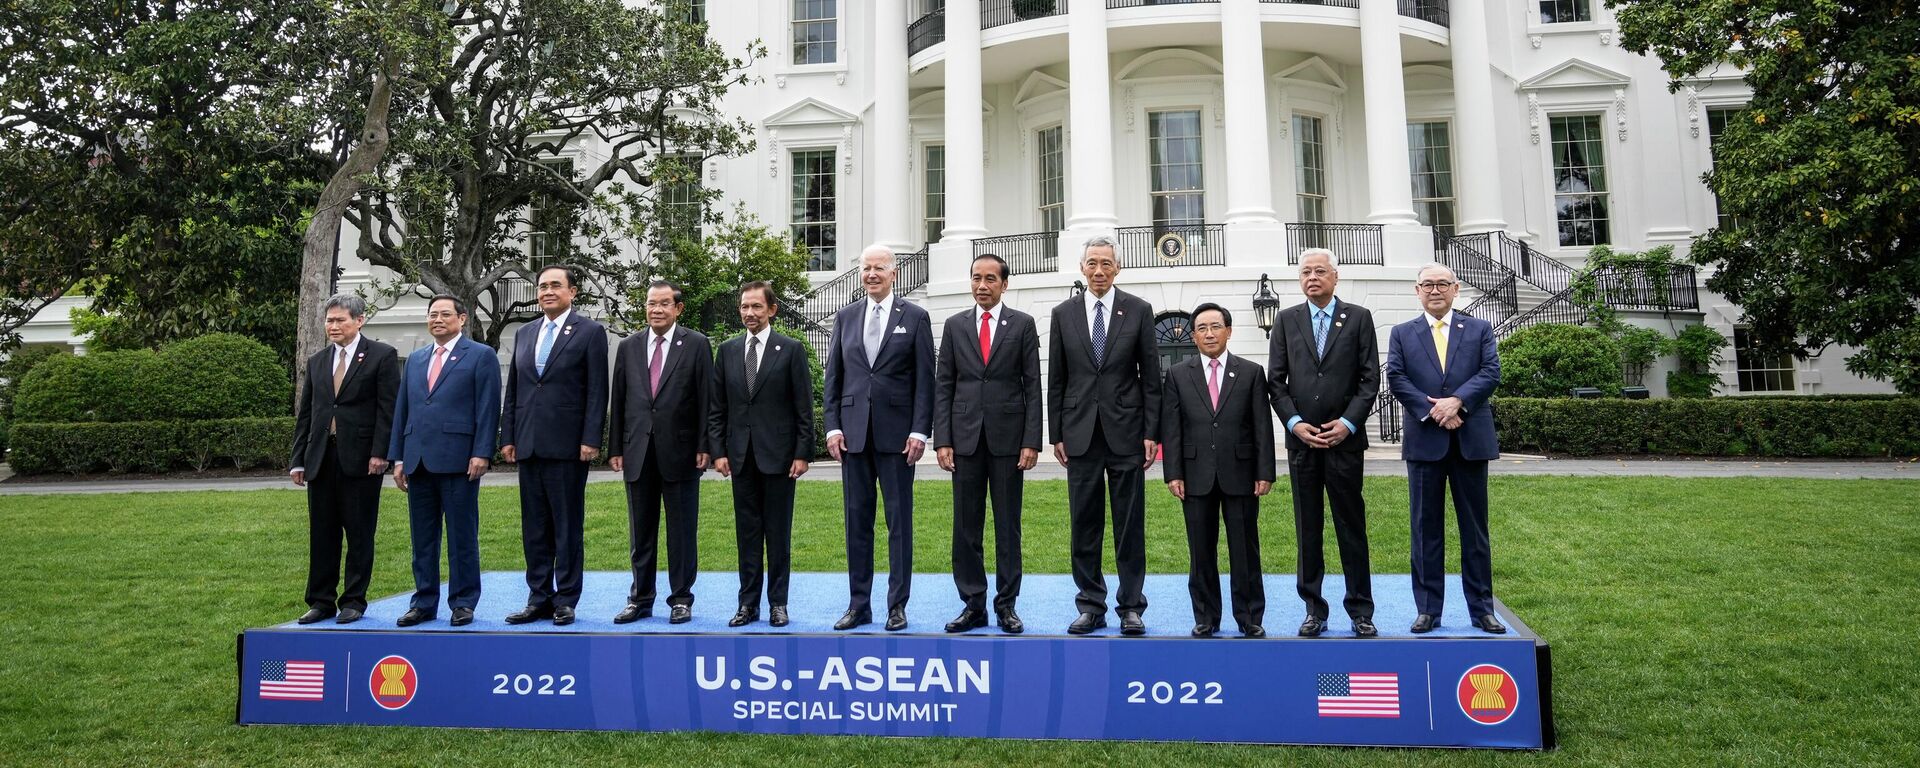 ホワイトハウスの外で撮影される米大統領と米国・ASEAN首脳会議の参加者 - Sputnik 日本, 1920, 13.05.2022